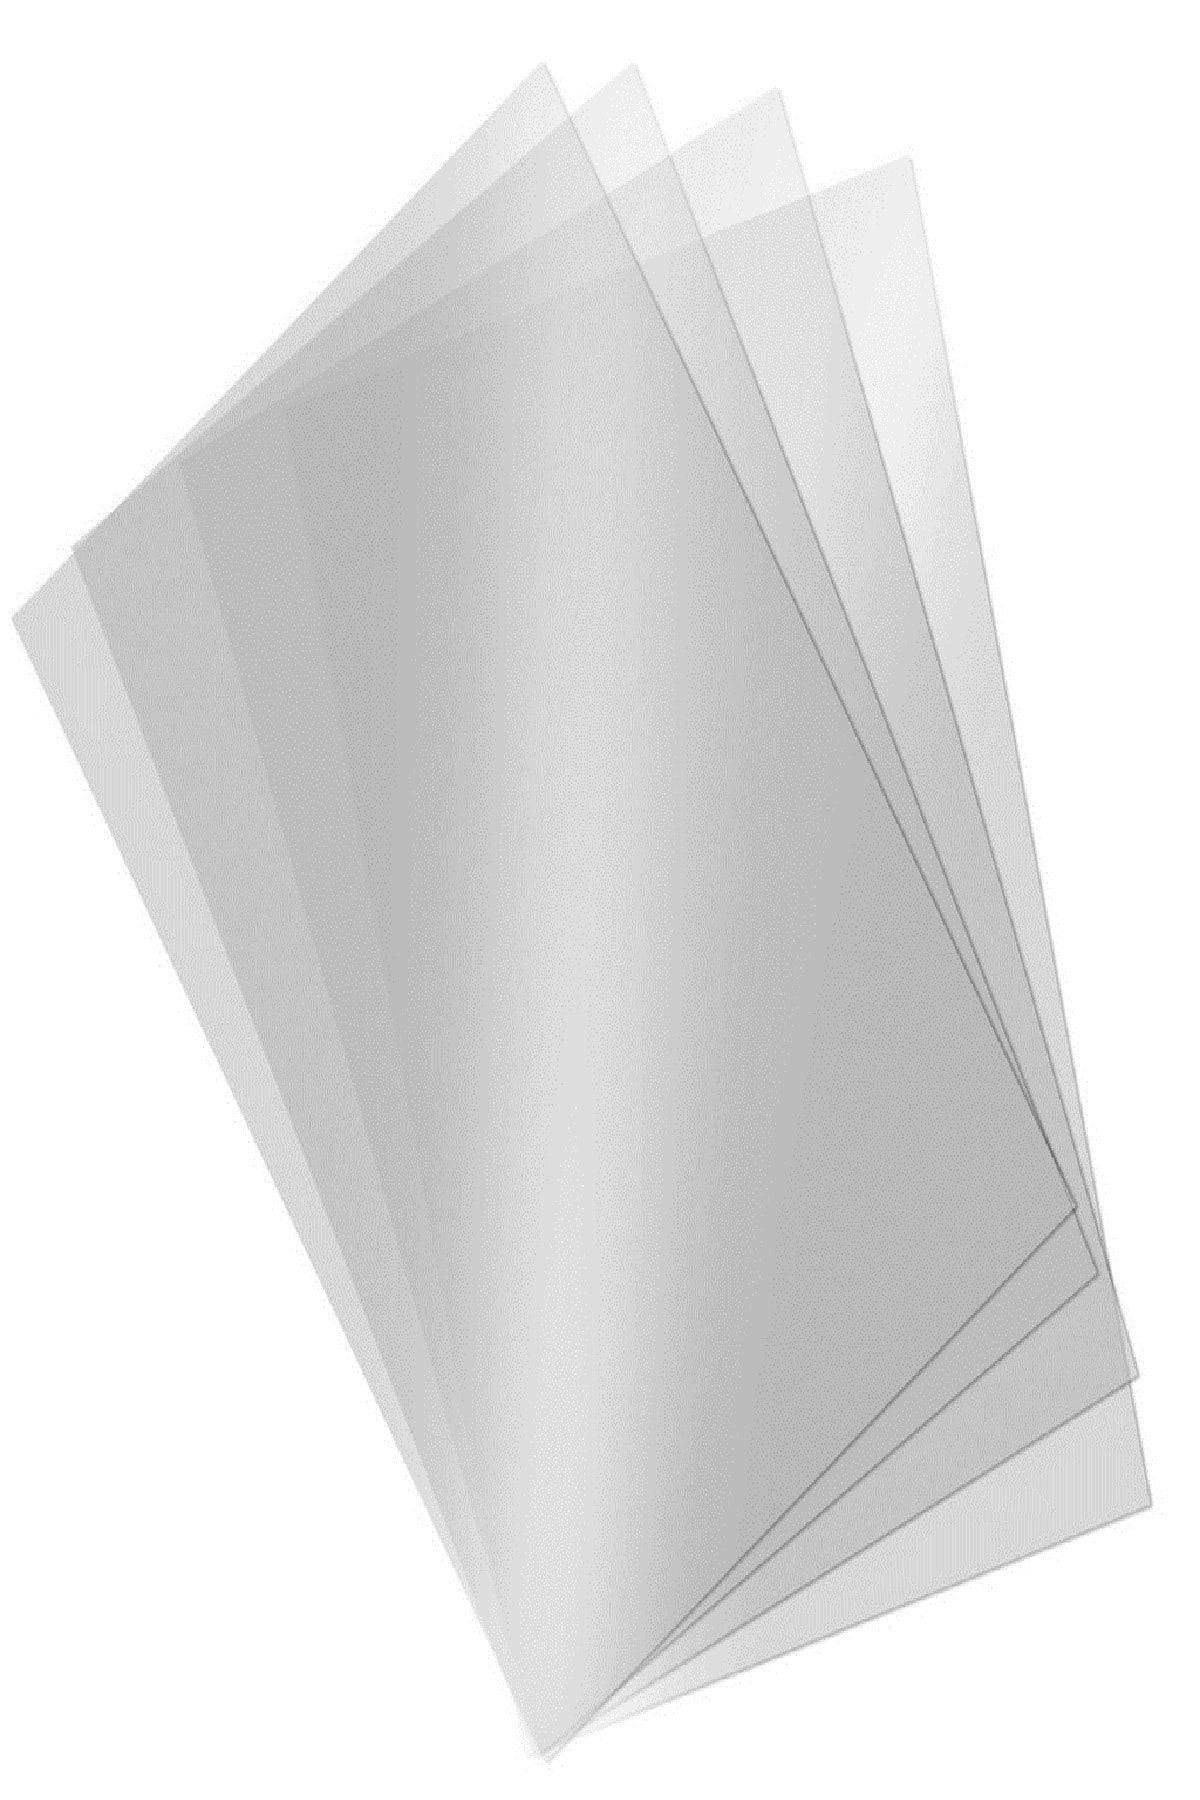 ÜMRANİYE HOBİ Asetat Kağıdı Şeffaf Transparan Kalın 500 Micron A4 - 5 Adet